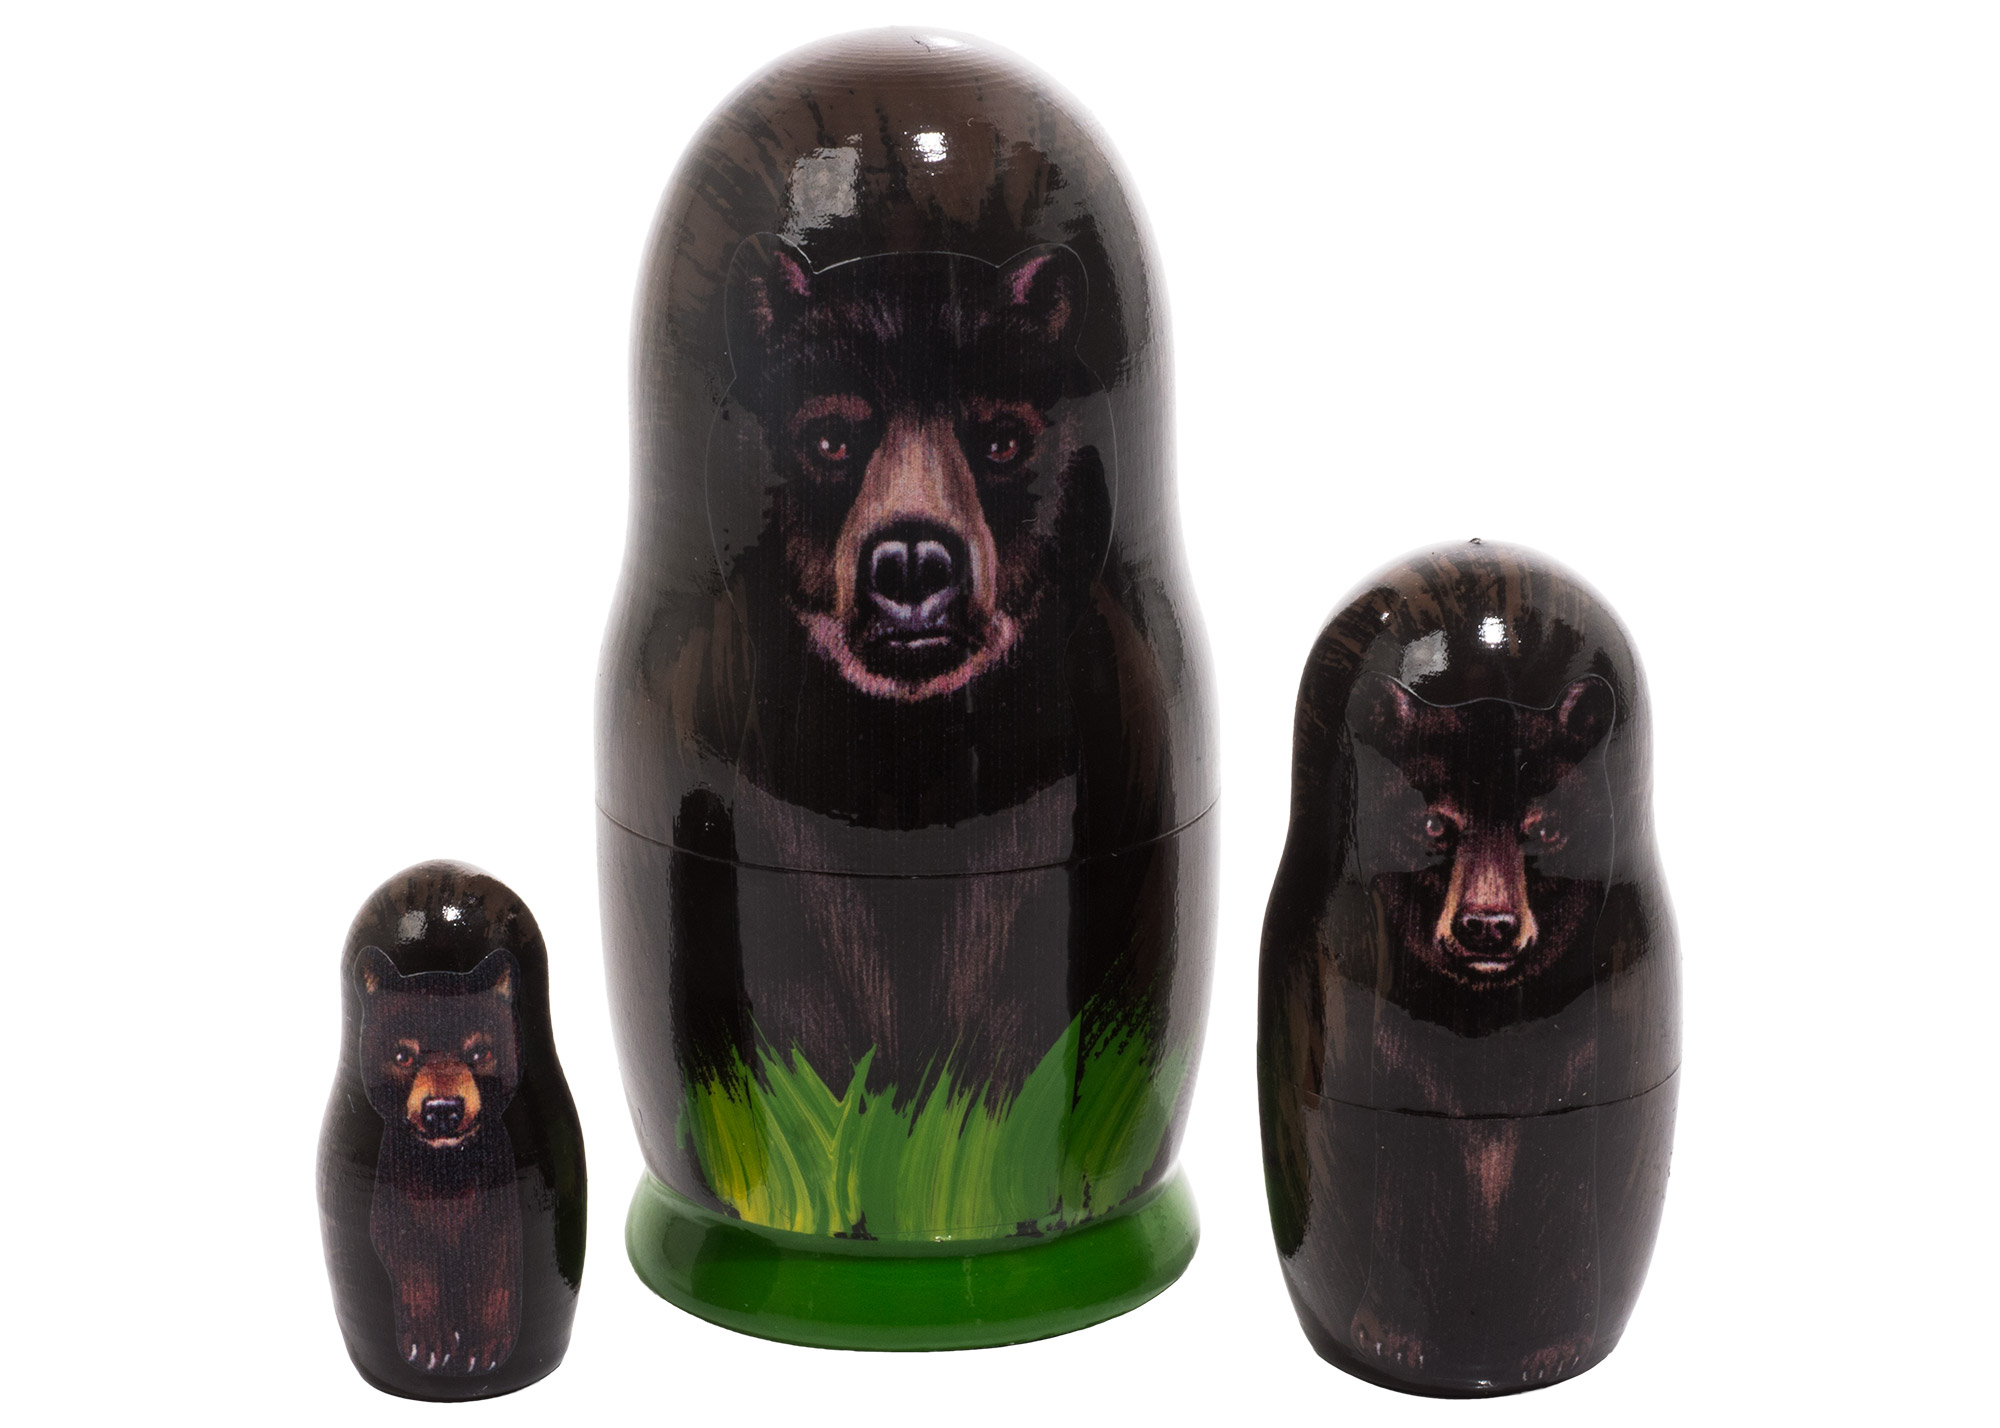 Buy Матрешка «Черный медведь» 3 места 9 см at GoldenCockerel.com